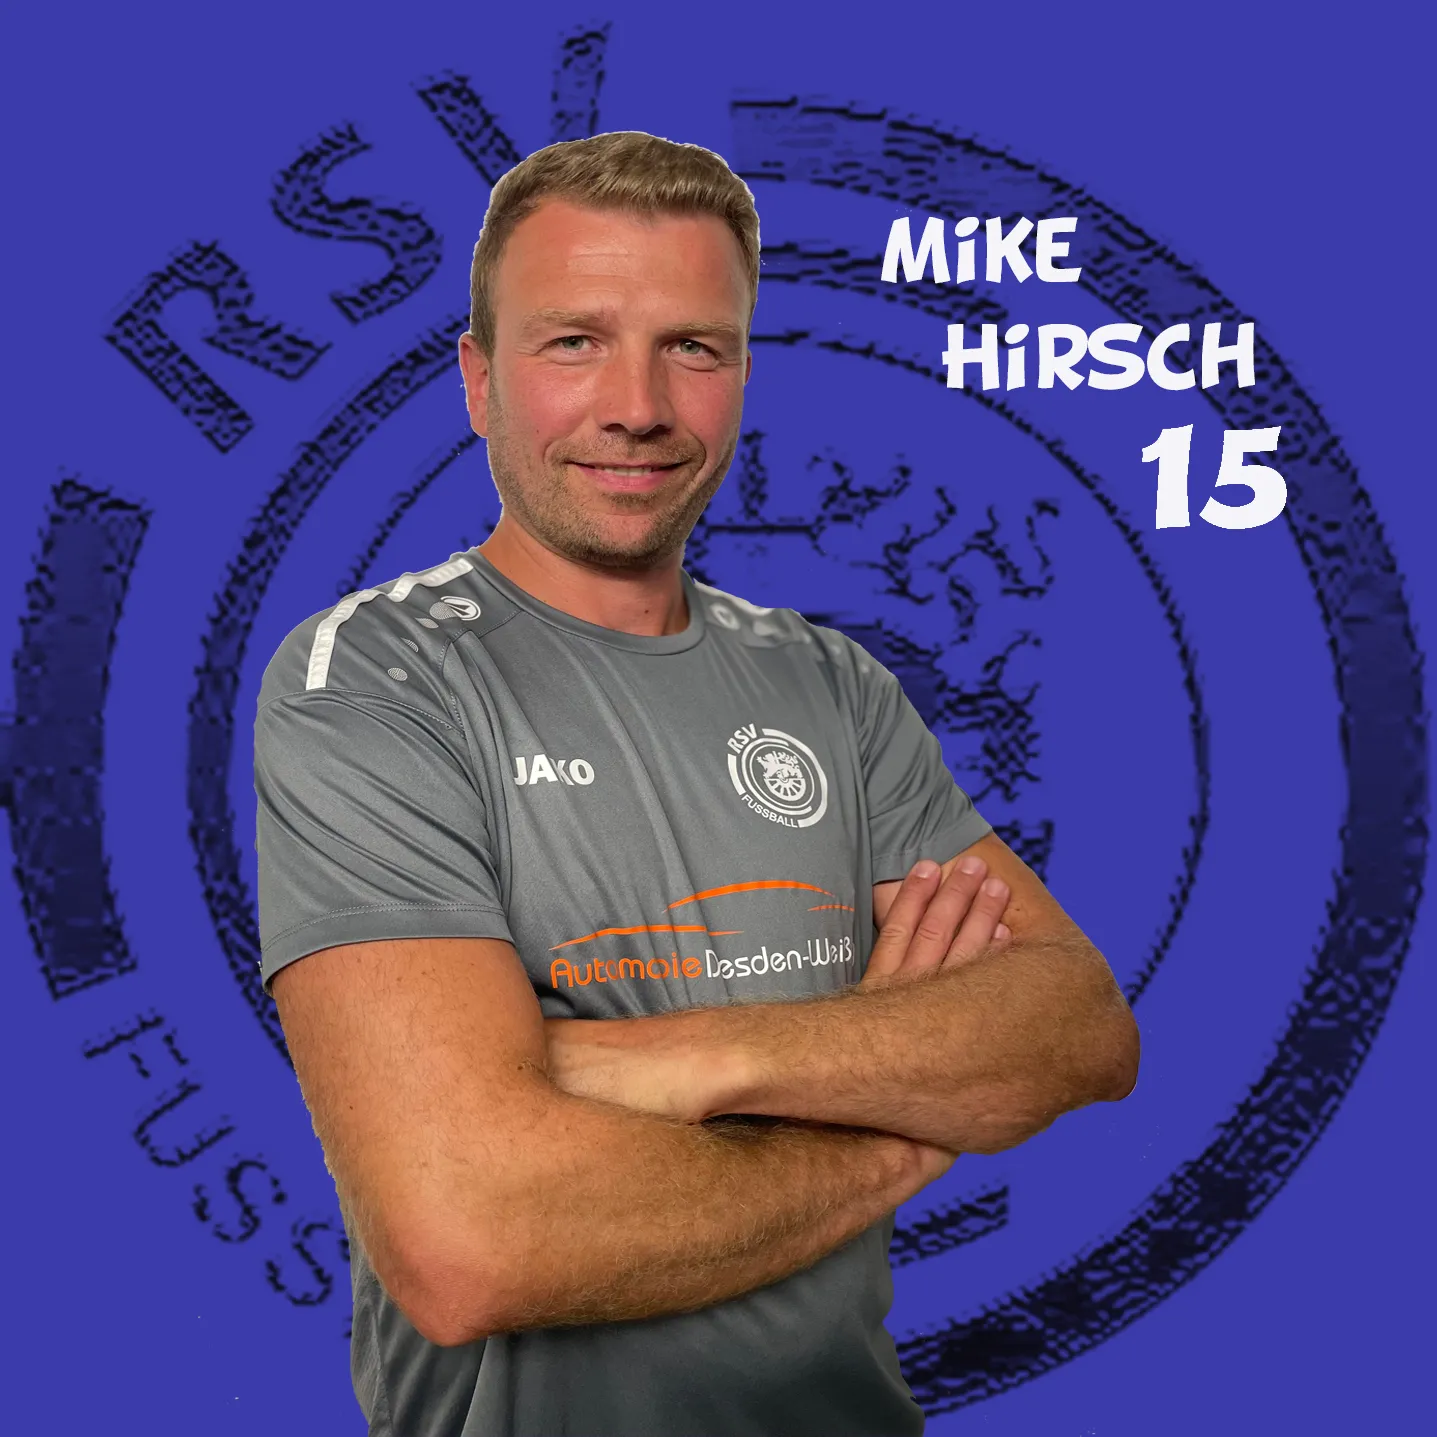 Mike Hirsch